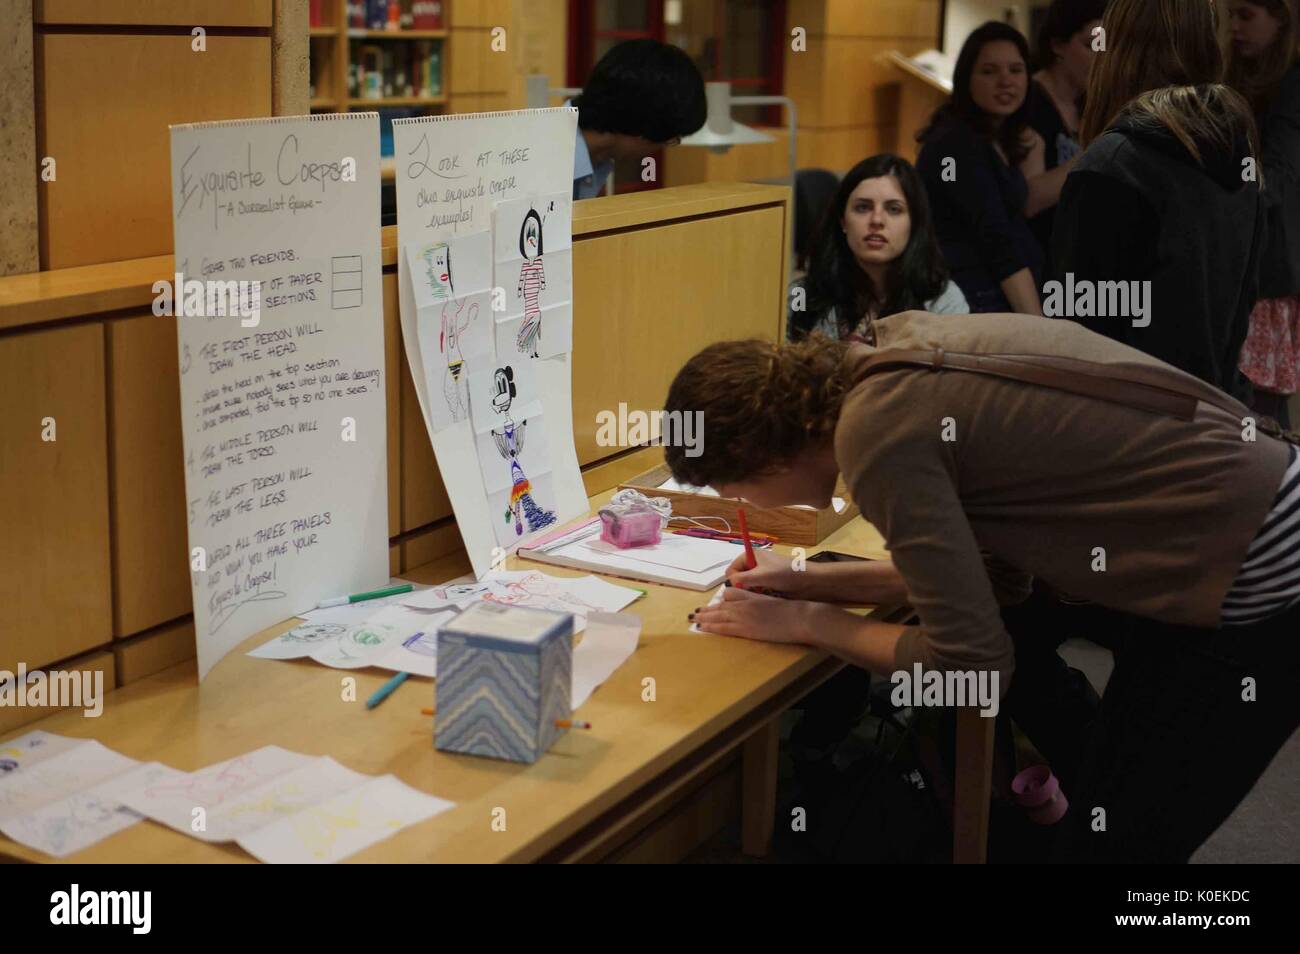 College les élèves participent à une activité interactive sur m-niveau (niveau principal) de la Milton s. Eisenhower Library sur l'homewood campud de l'université Johns Hopkins de Baltimore, Maryland, 2014. courtesy eric chen. Banque D'Images